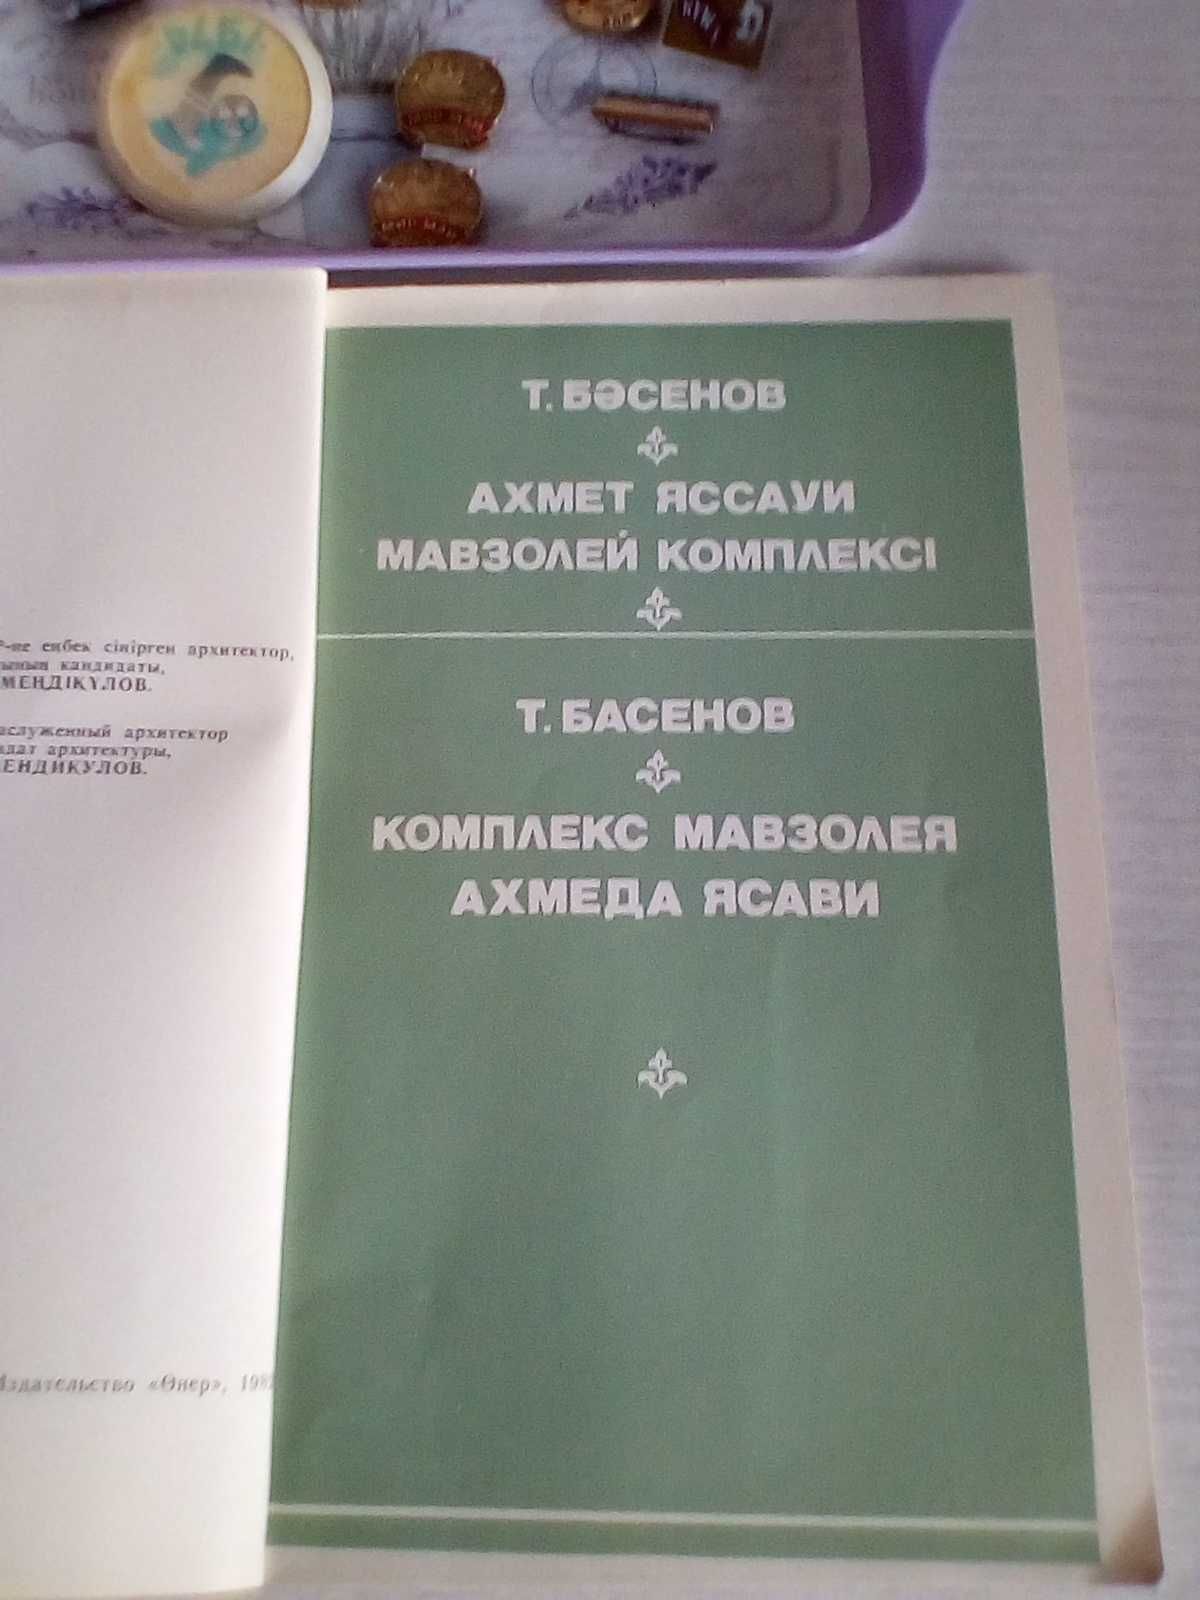 Книга Кунаева о Советском Казахстане